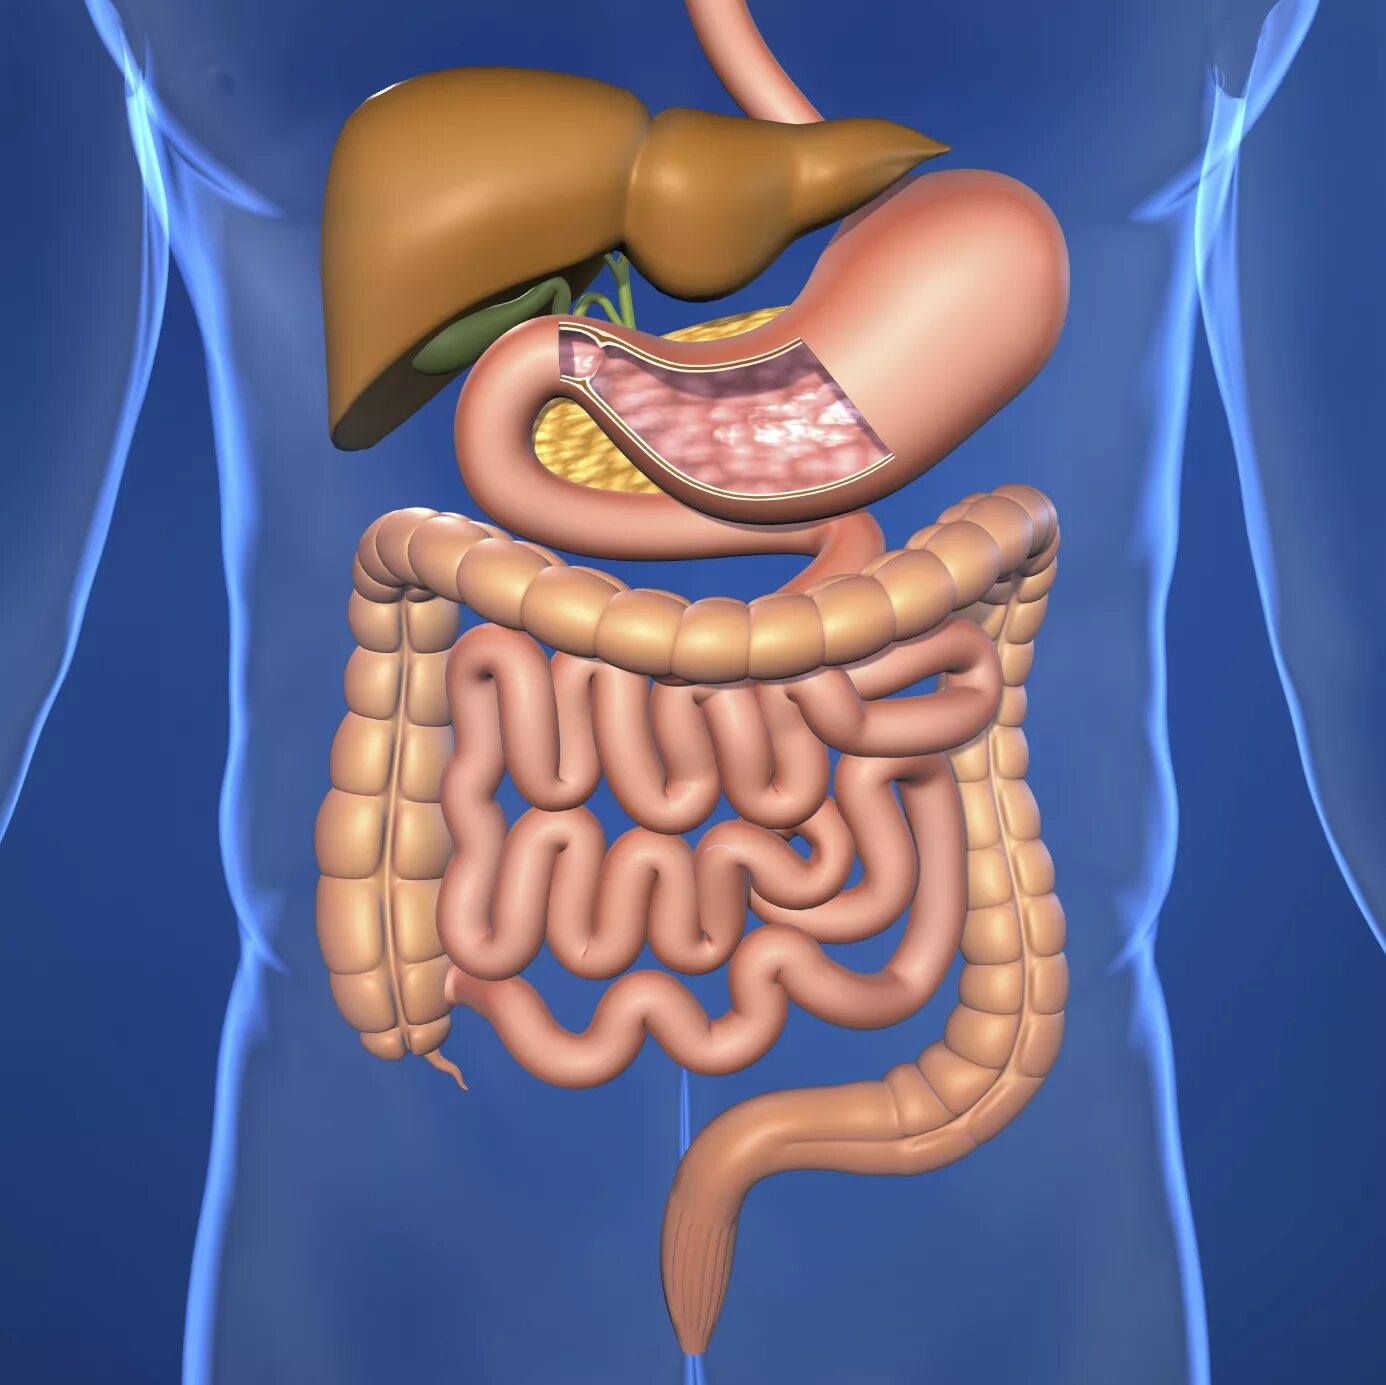 Проблемы с желудком и кишечником. Желудочно-кишечный тракт человека анатомия. Пищеварительная система кишечник анатомия. Пищеварительный тракт человека. Анатомия пищеварительного тракта человека.